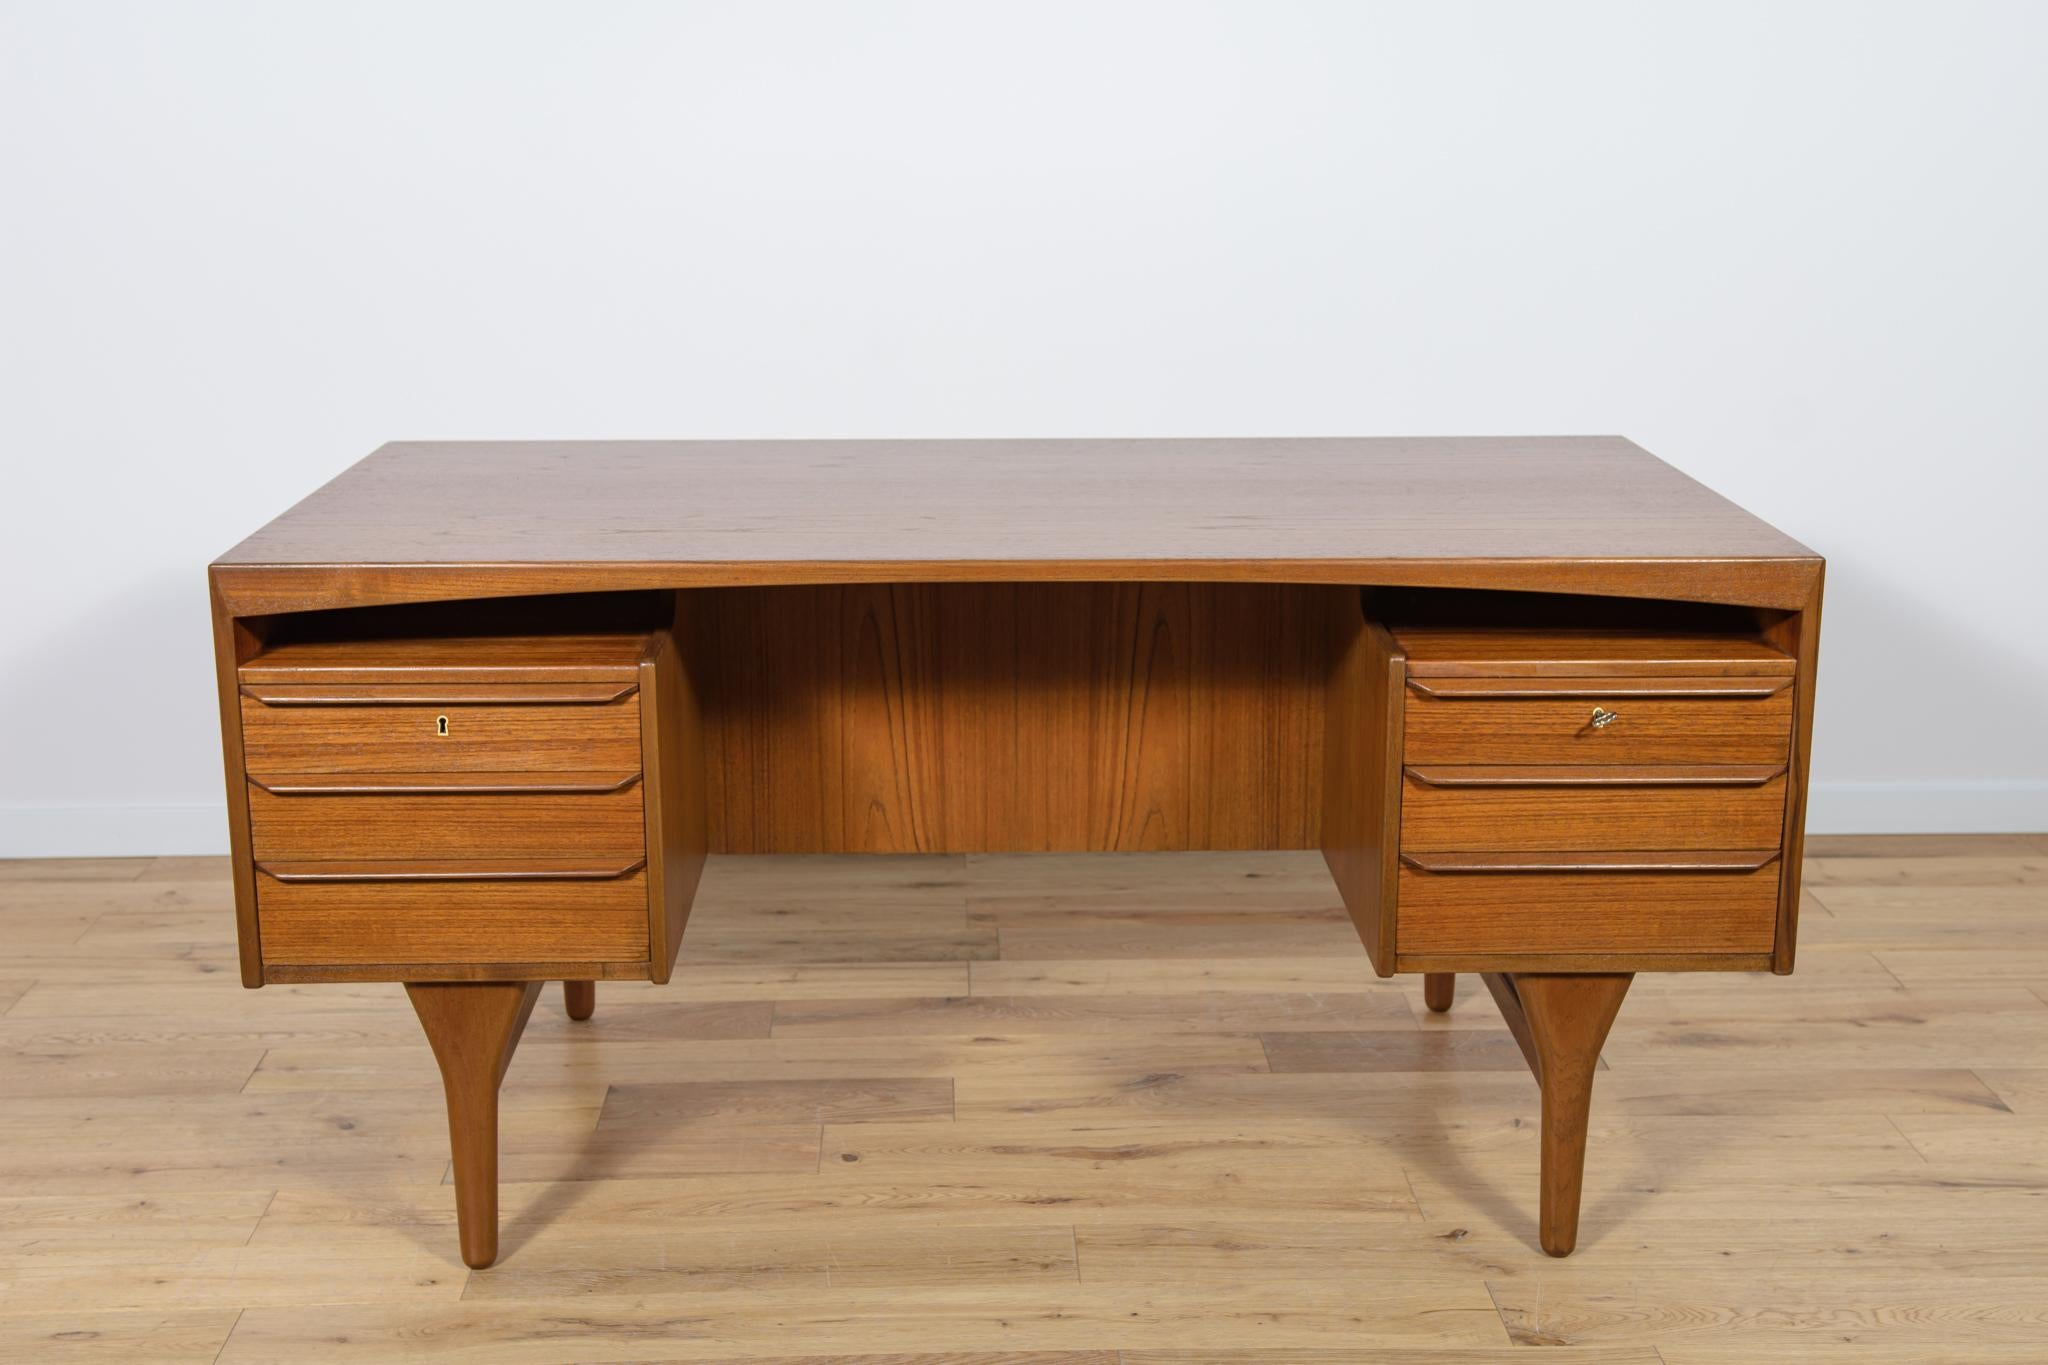 Der Schreibtisch wurde von Valdemar Mortensen entworfen und in den 1960er Jahren in Dänemark hergestellt. Der Schreibtisch besteht aus Teakholz und ist freistehend. An der Vorderseite befinden sich zwei Module mit je drei Schubladen. An der